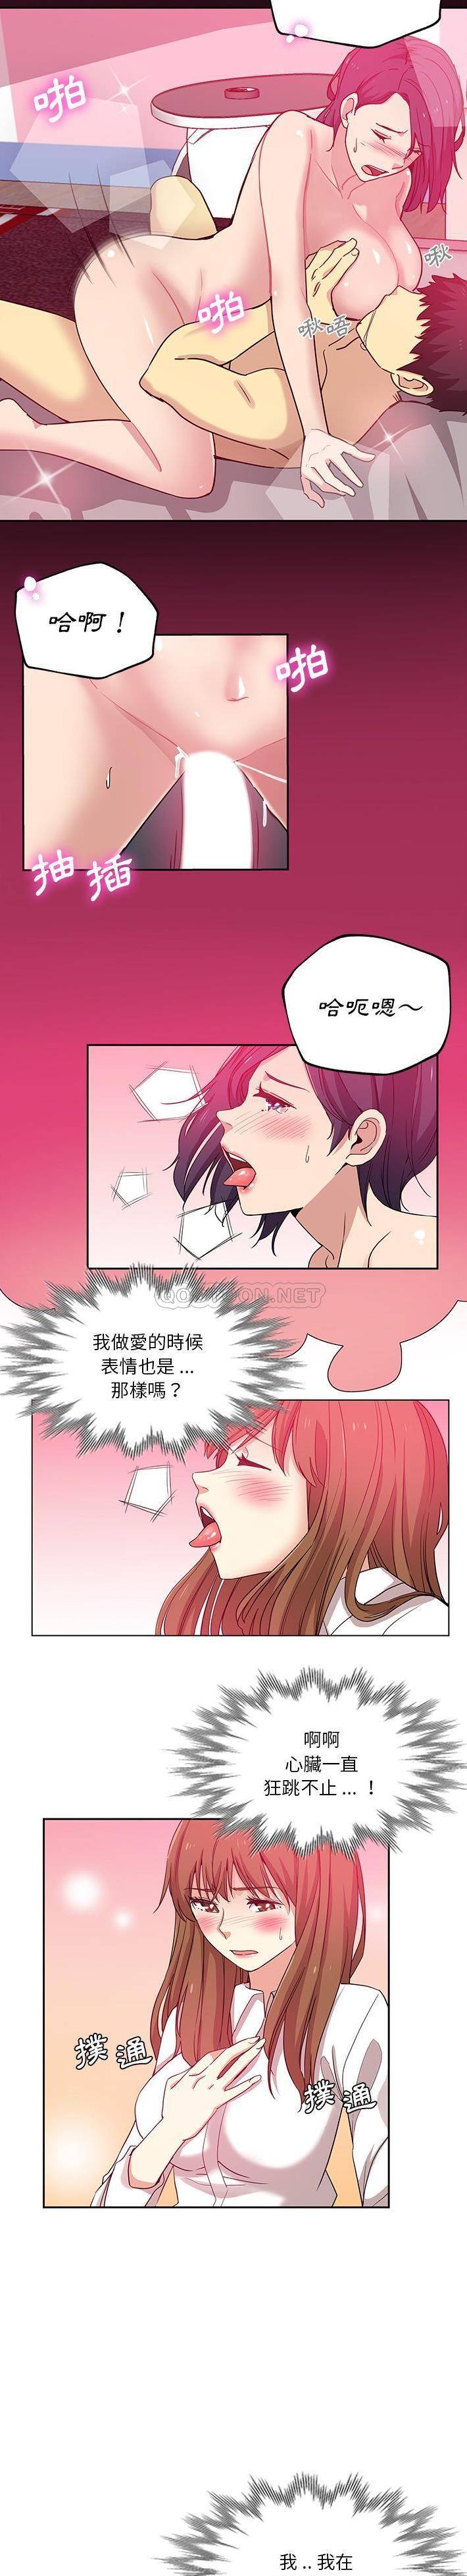 韩国污漫画 危險純友誼 第10话 3